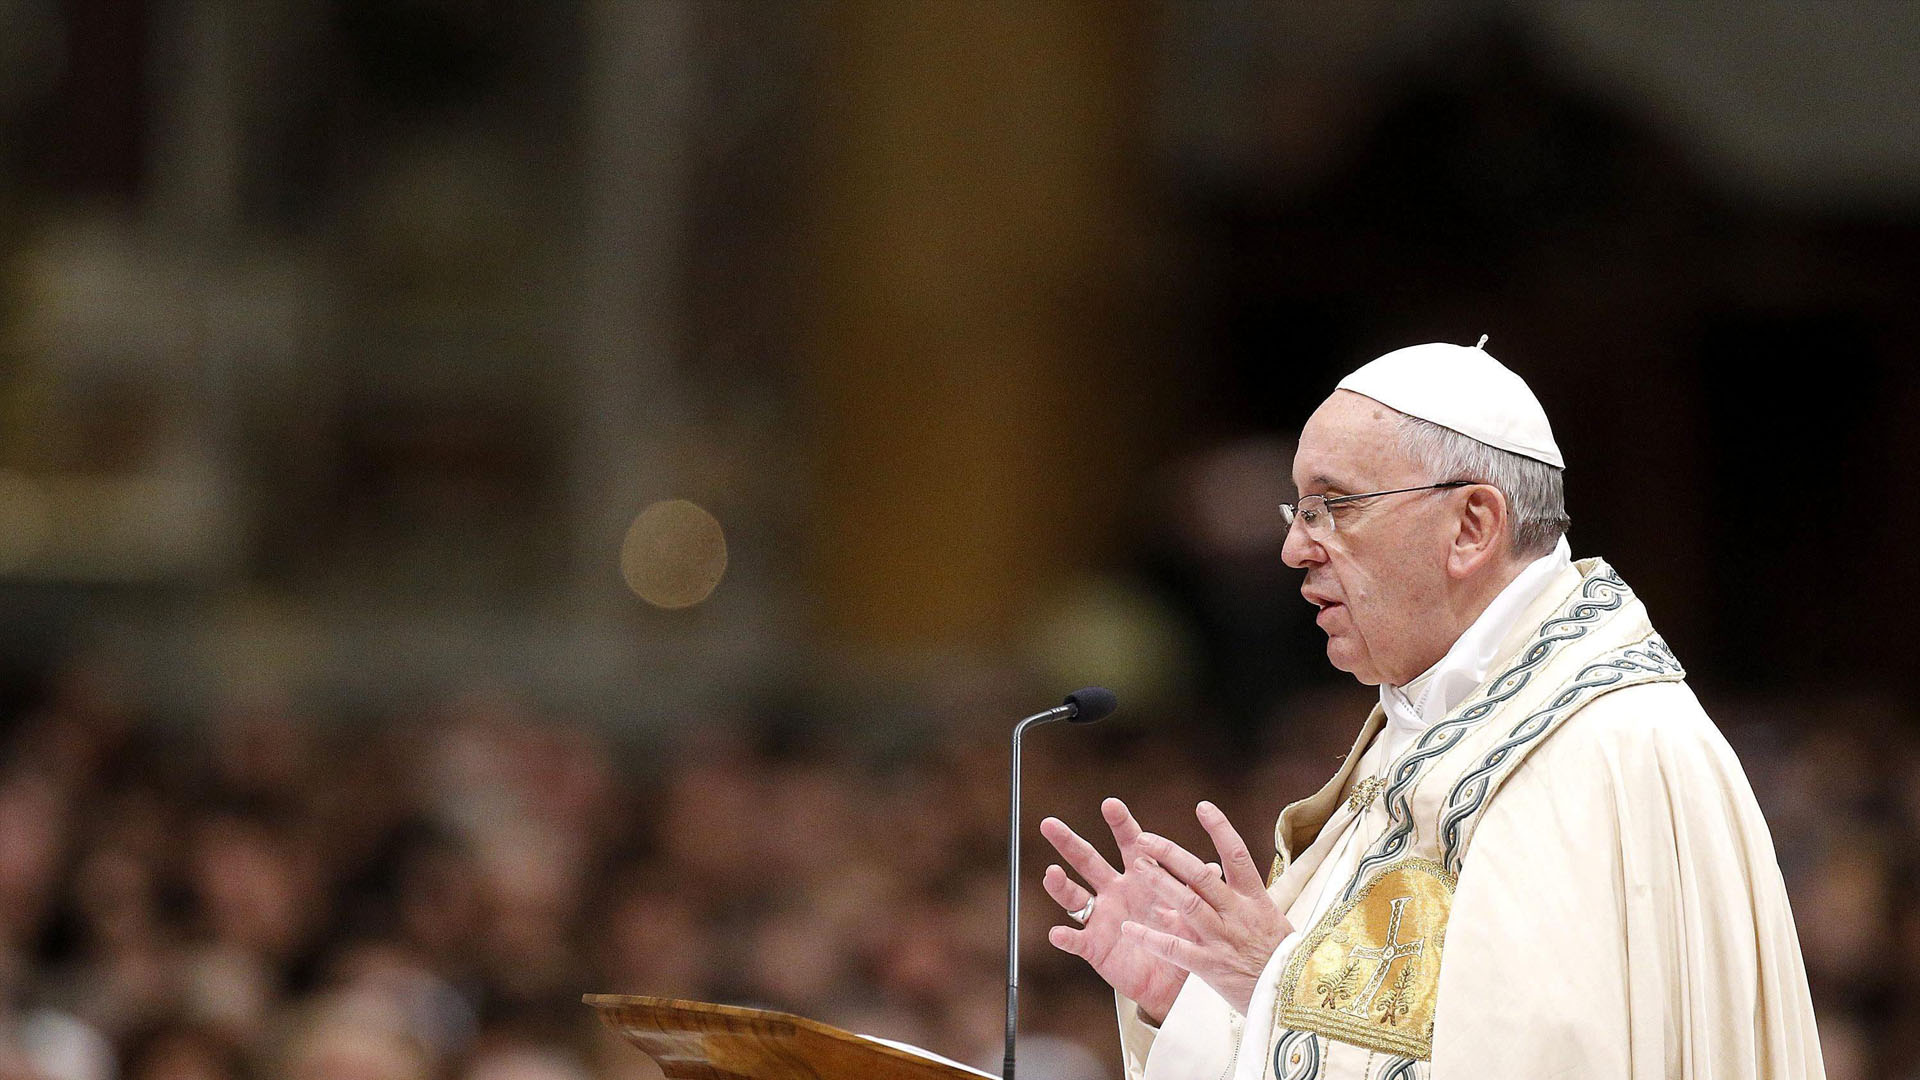 El pontífice solicitó a los sacerdotes católicos entender las realidades actuales y aceptar más el divorcio y la homosexualidad